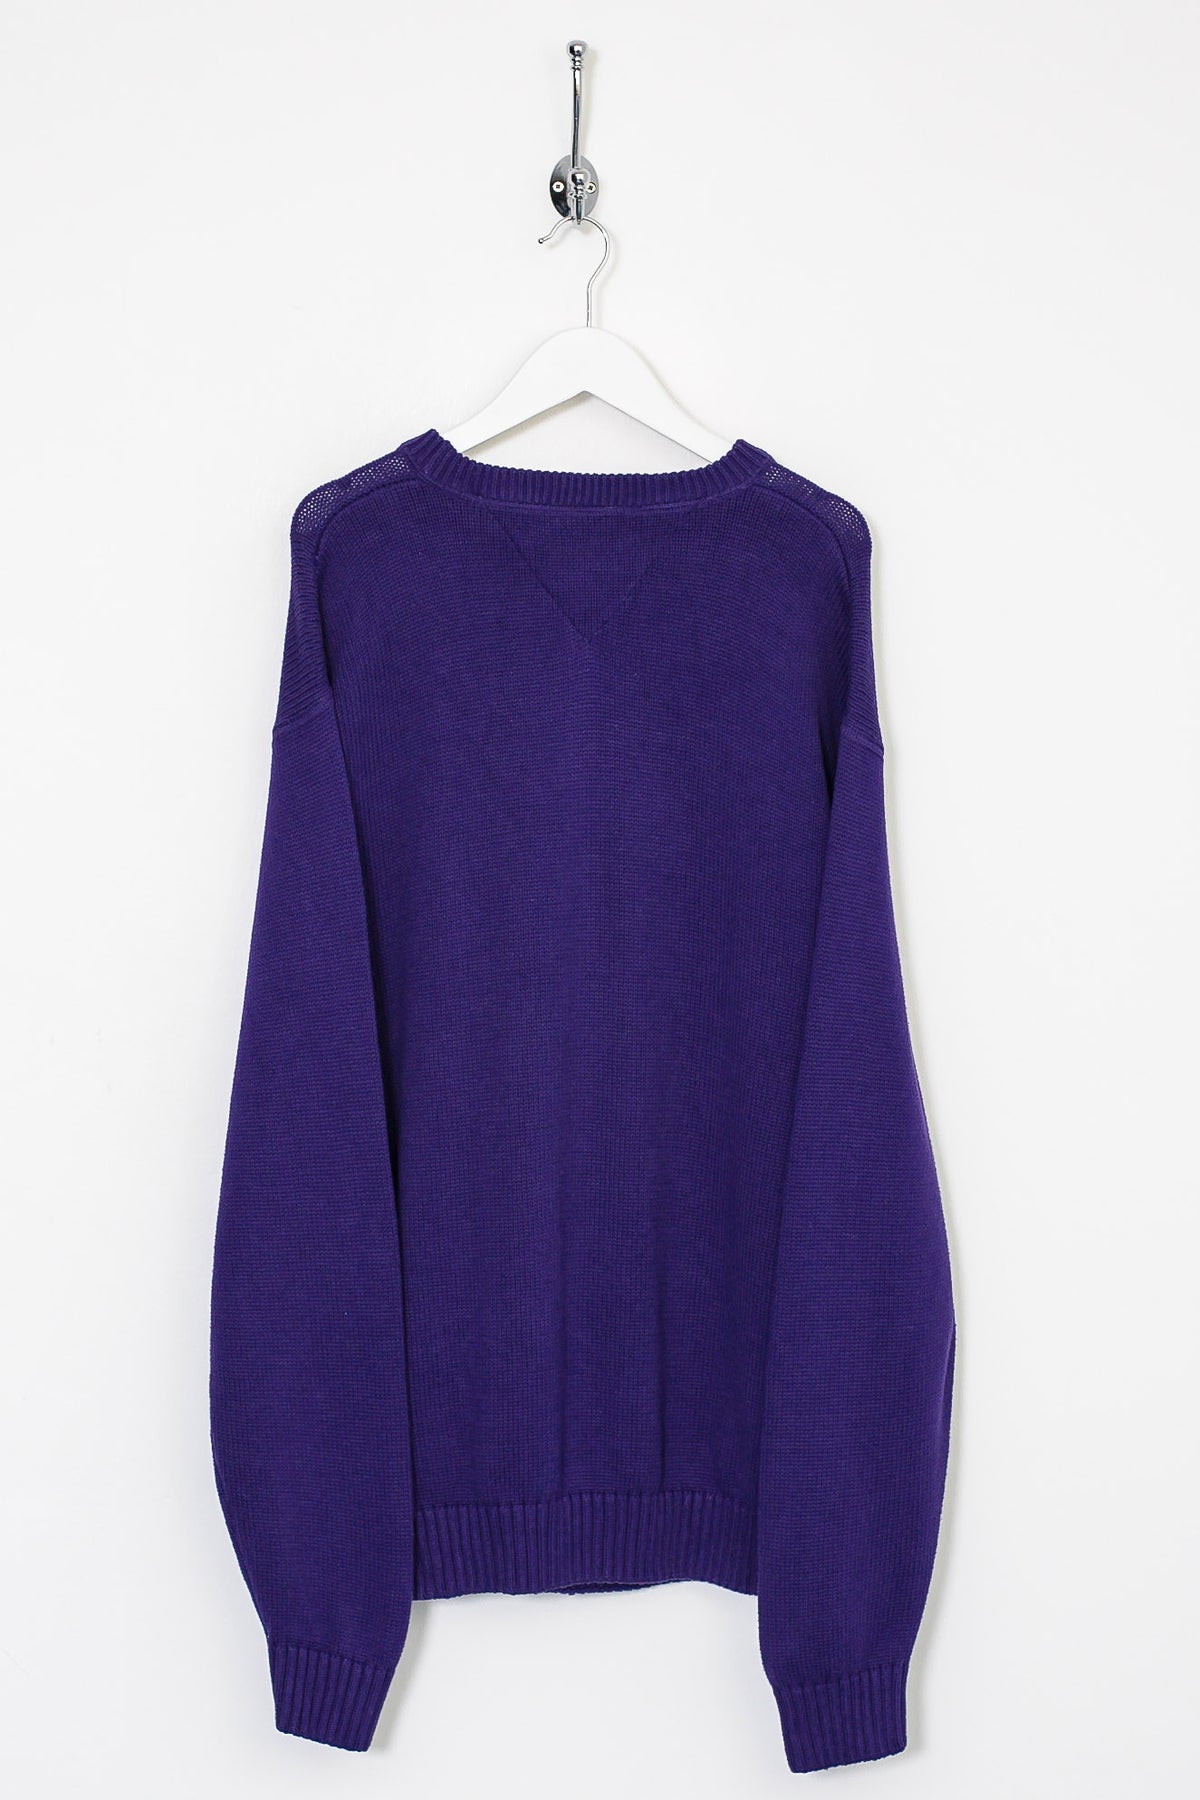 90s Tommy Hilfiger Knit Sweatshirt (XL)